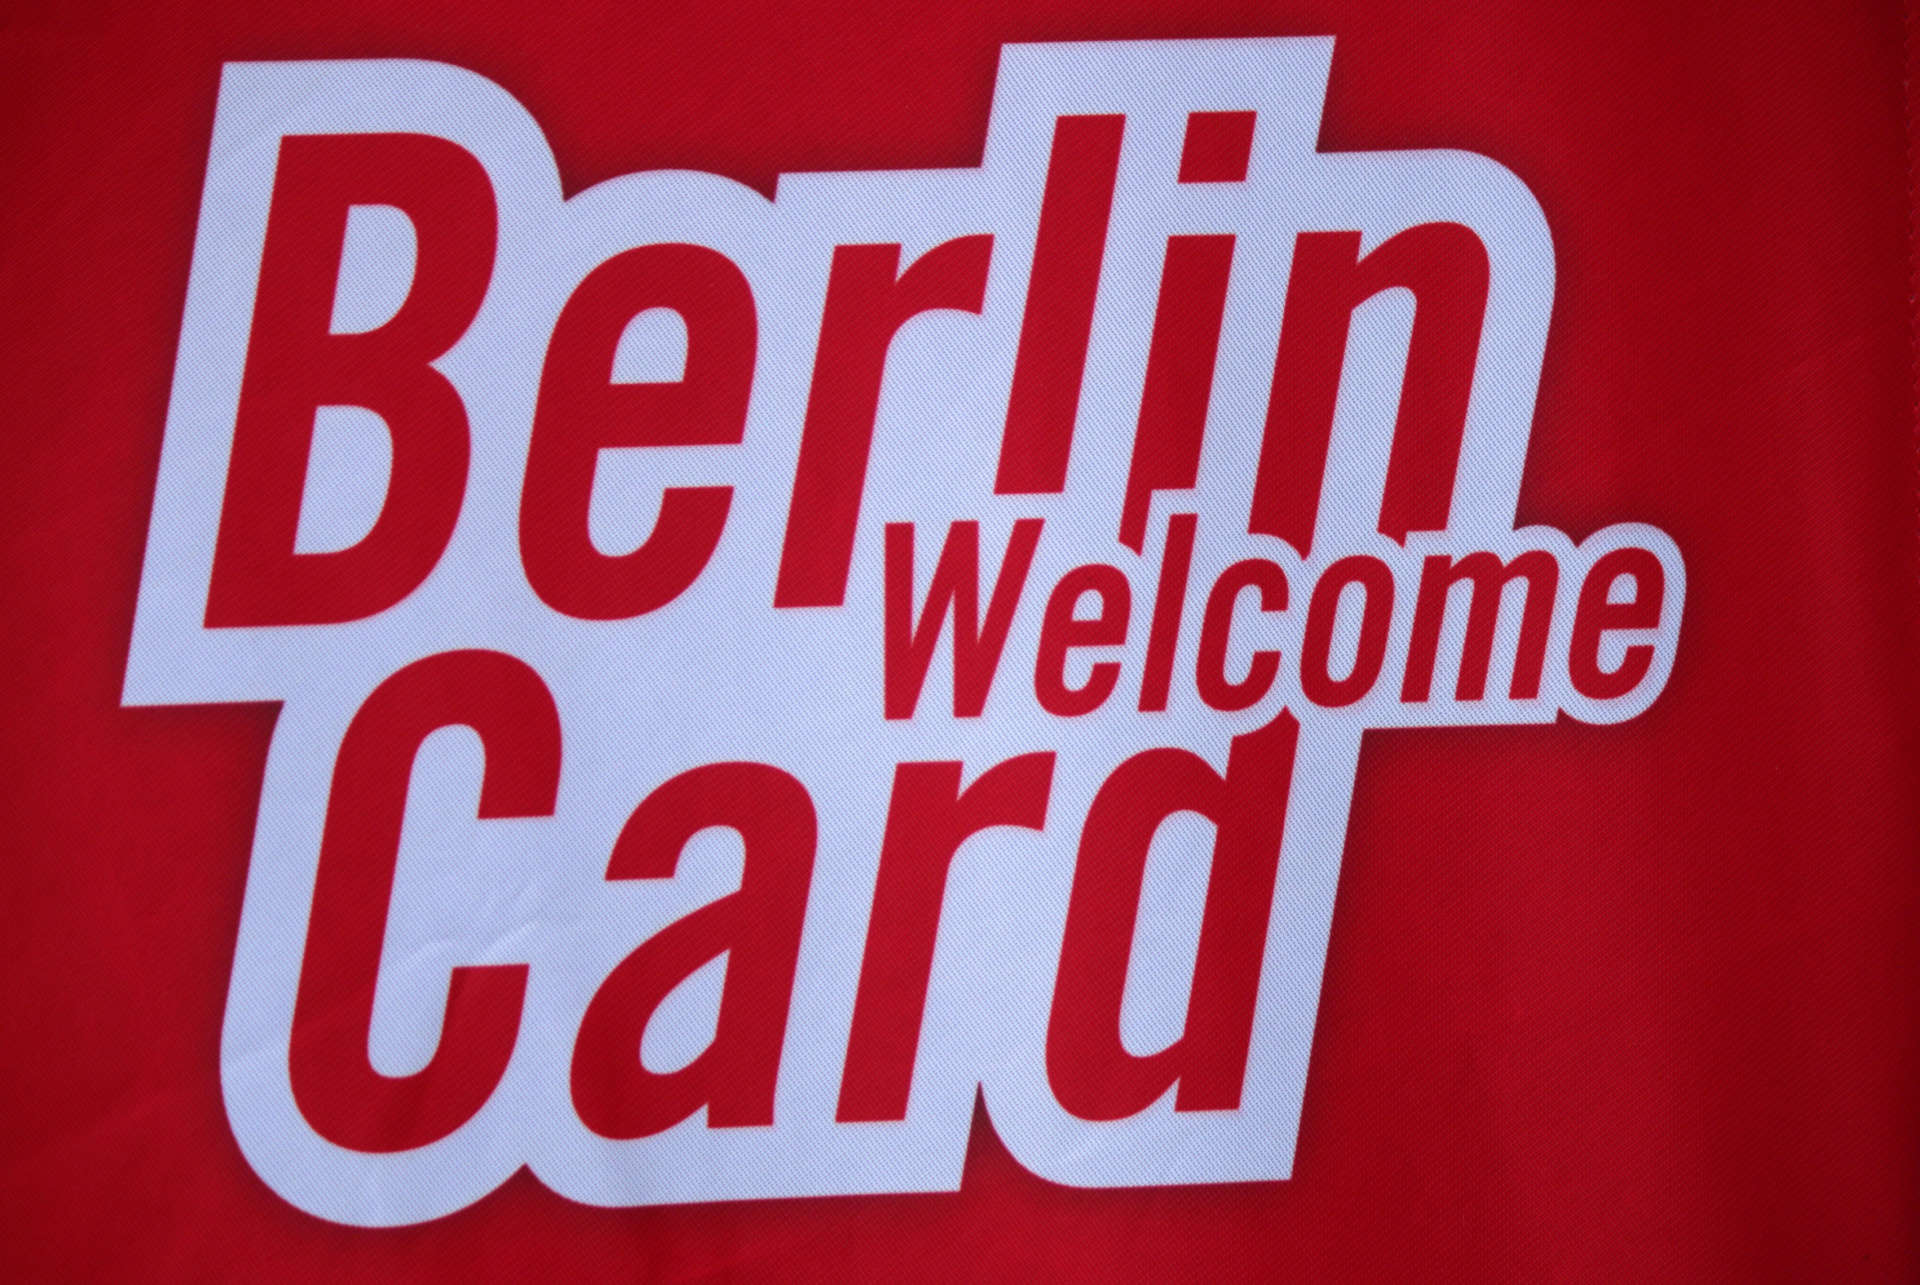 berlin welcome card